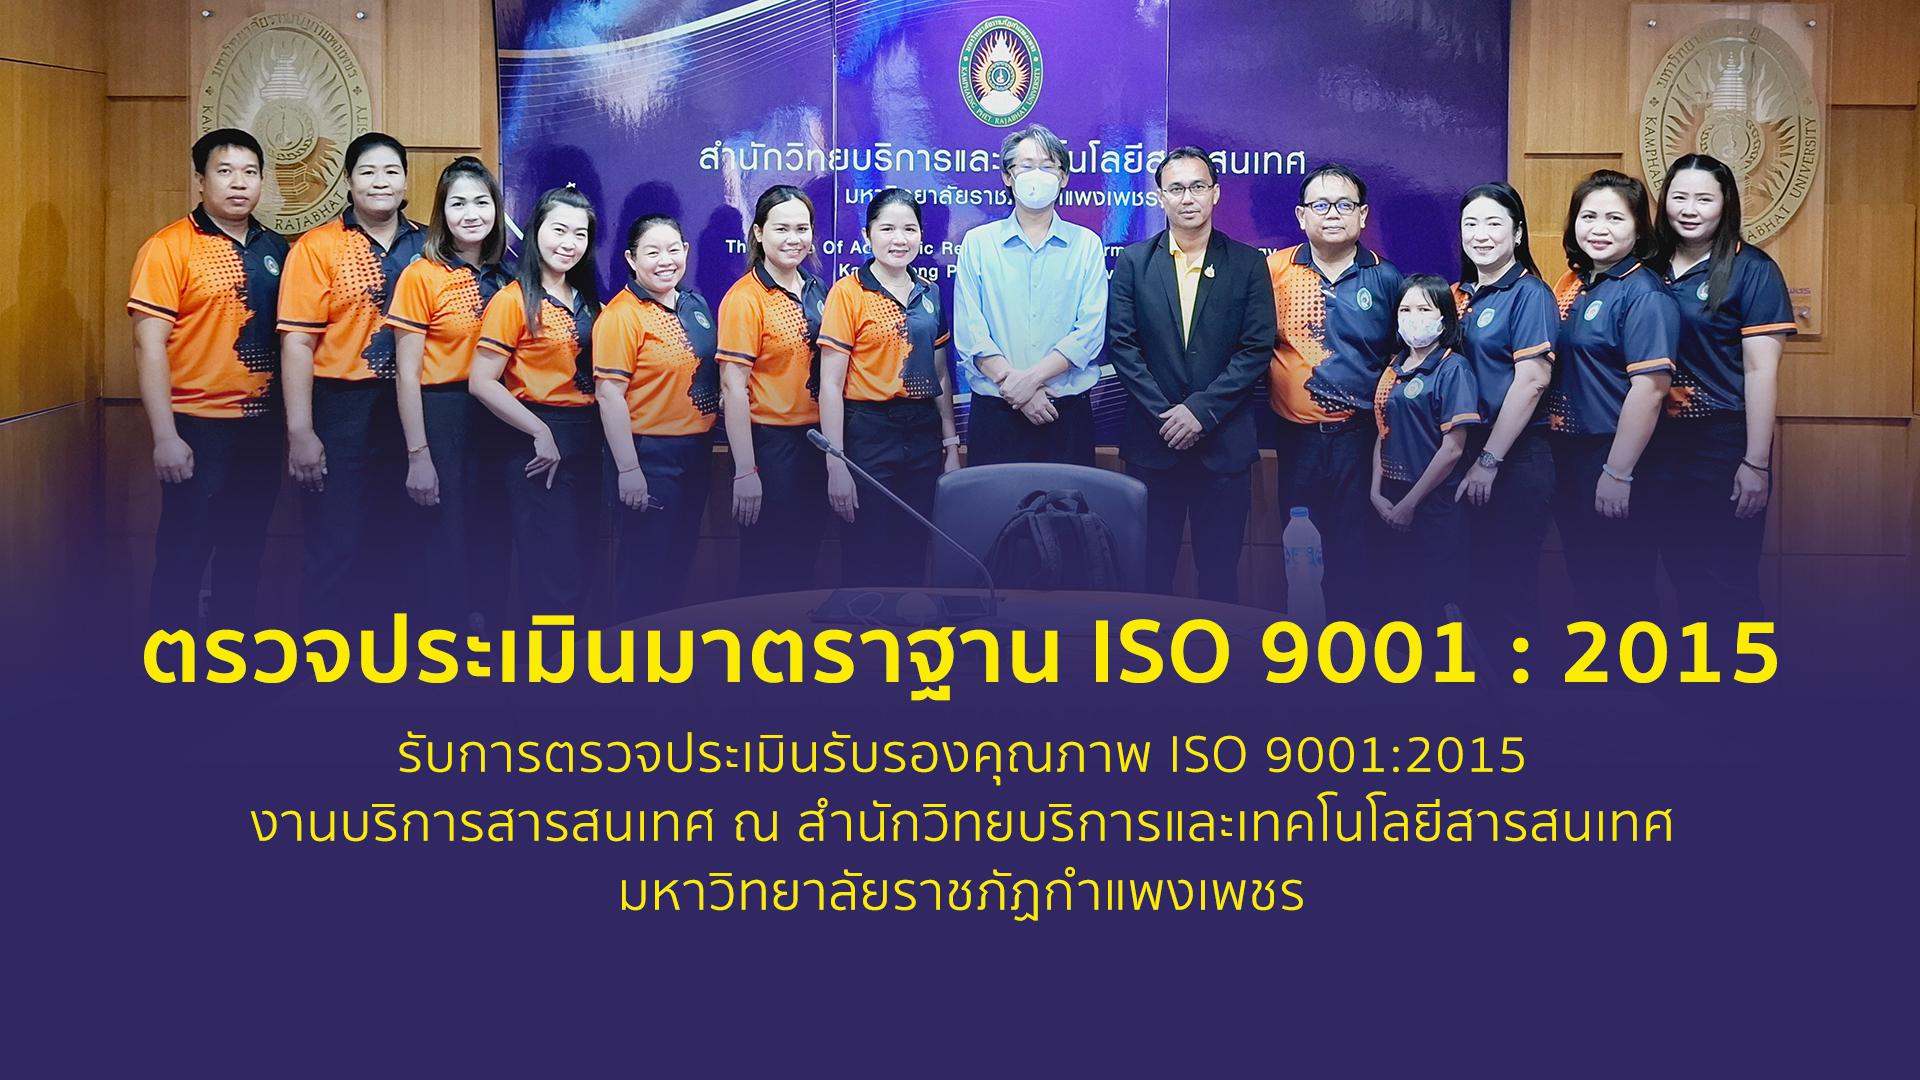 ตรวจประเมินรับรองคุณภาพ ISO 9001:2015 งานบริการสารสนเทศ